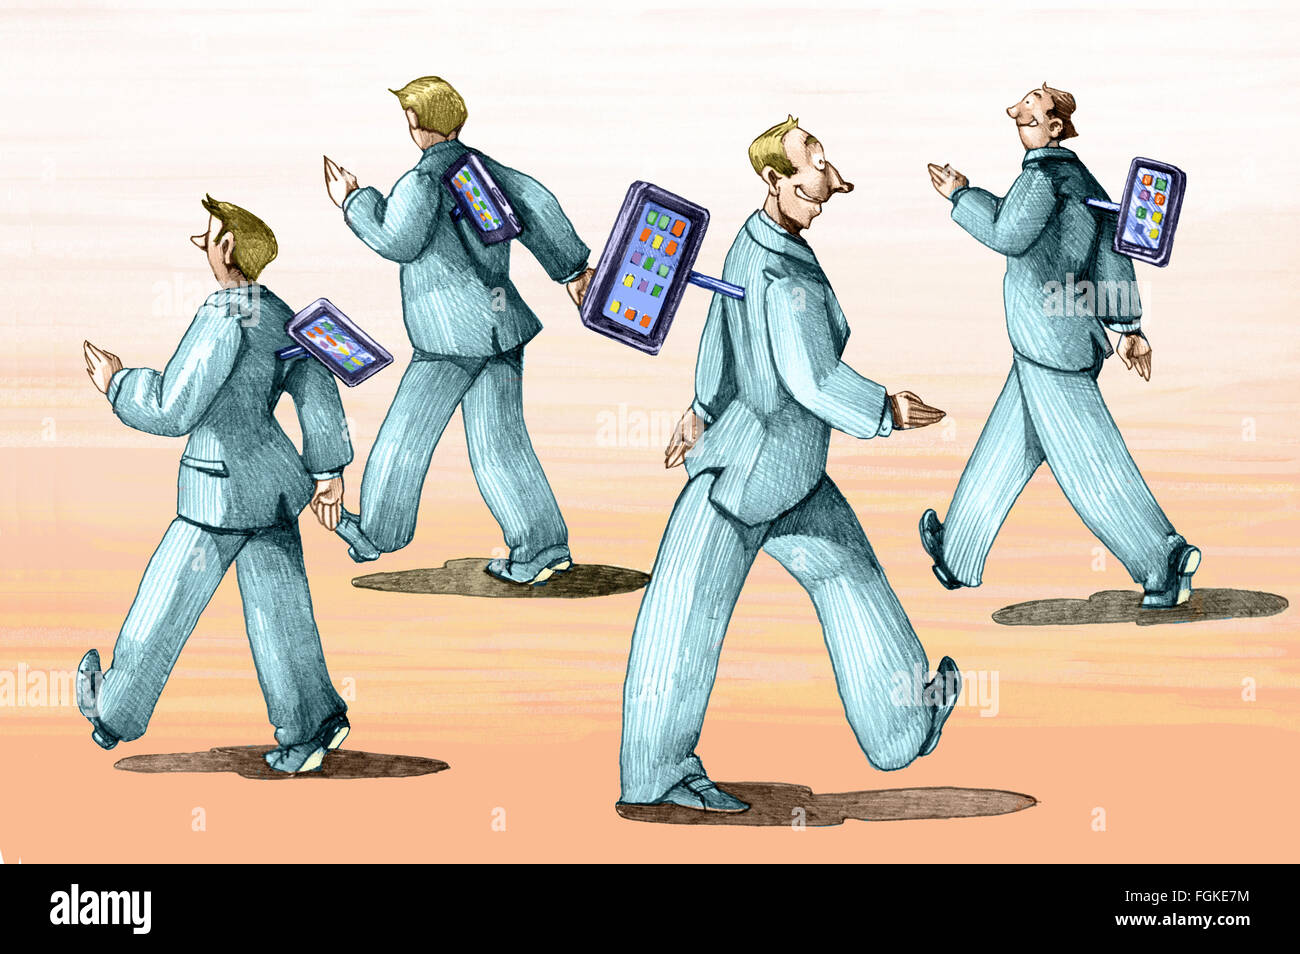 Gli uomini a piedi come degli automi controllato dal vostro telefono mobile Foto Stock